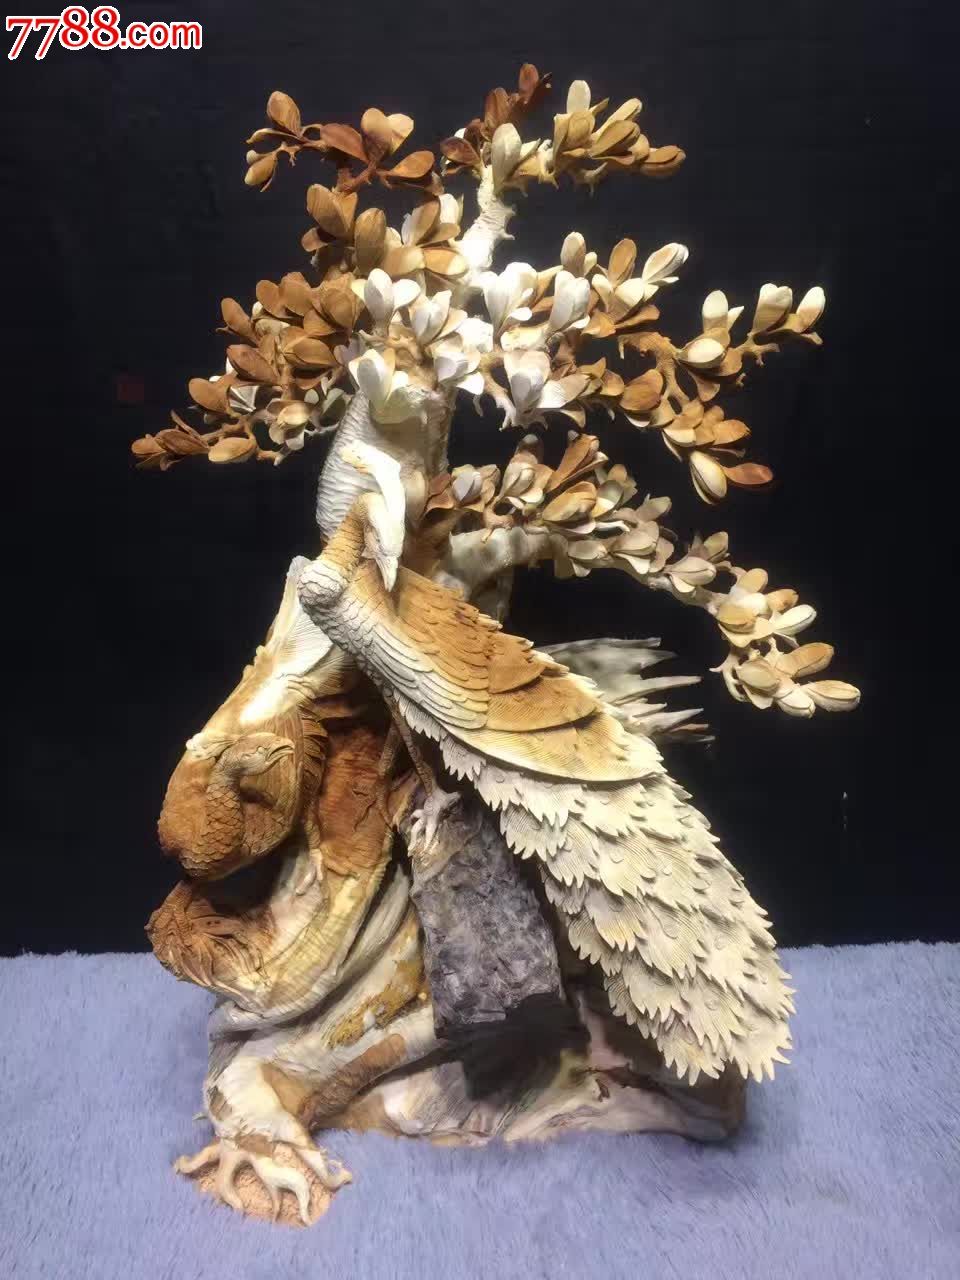 木雕兰花雕刻过程图片